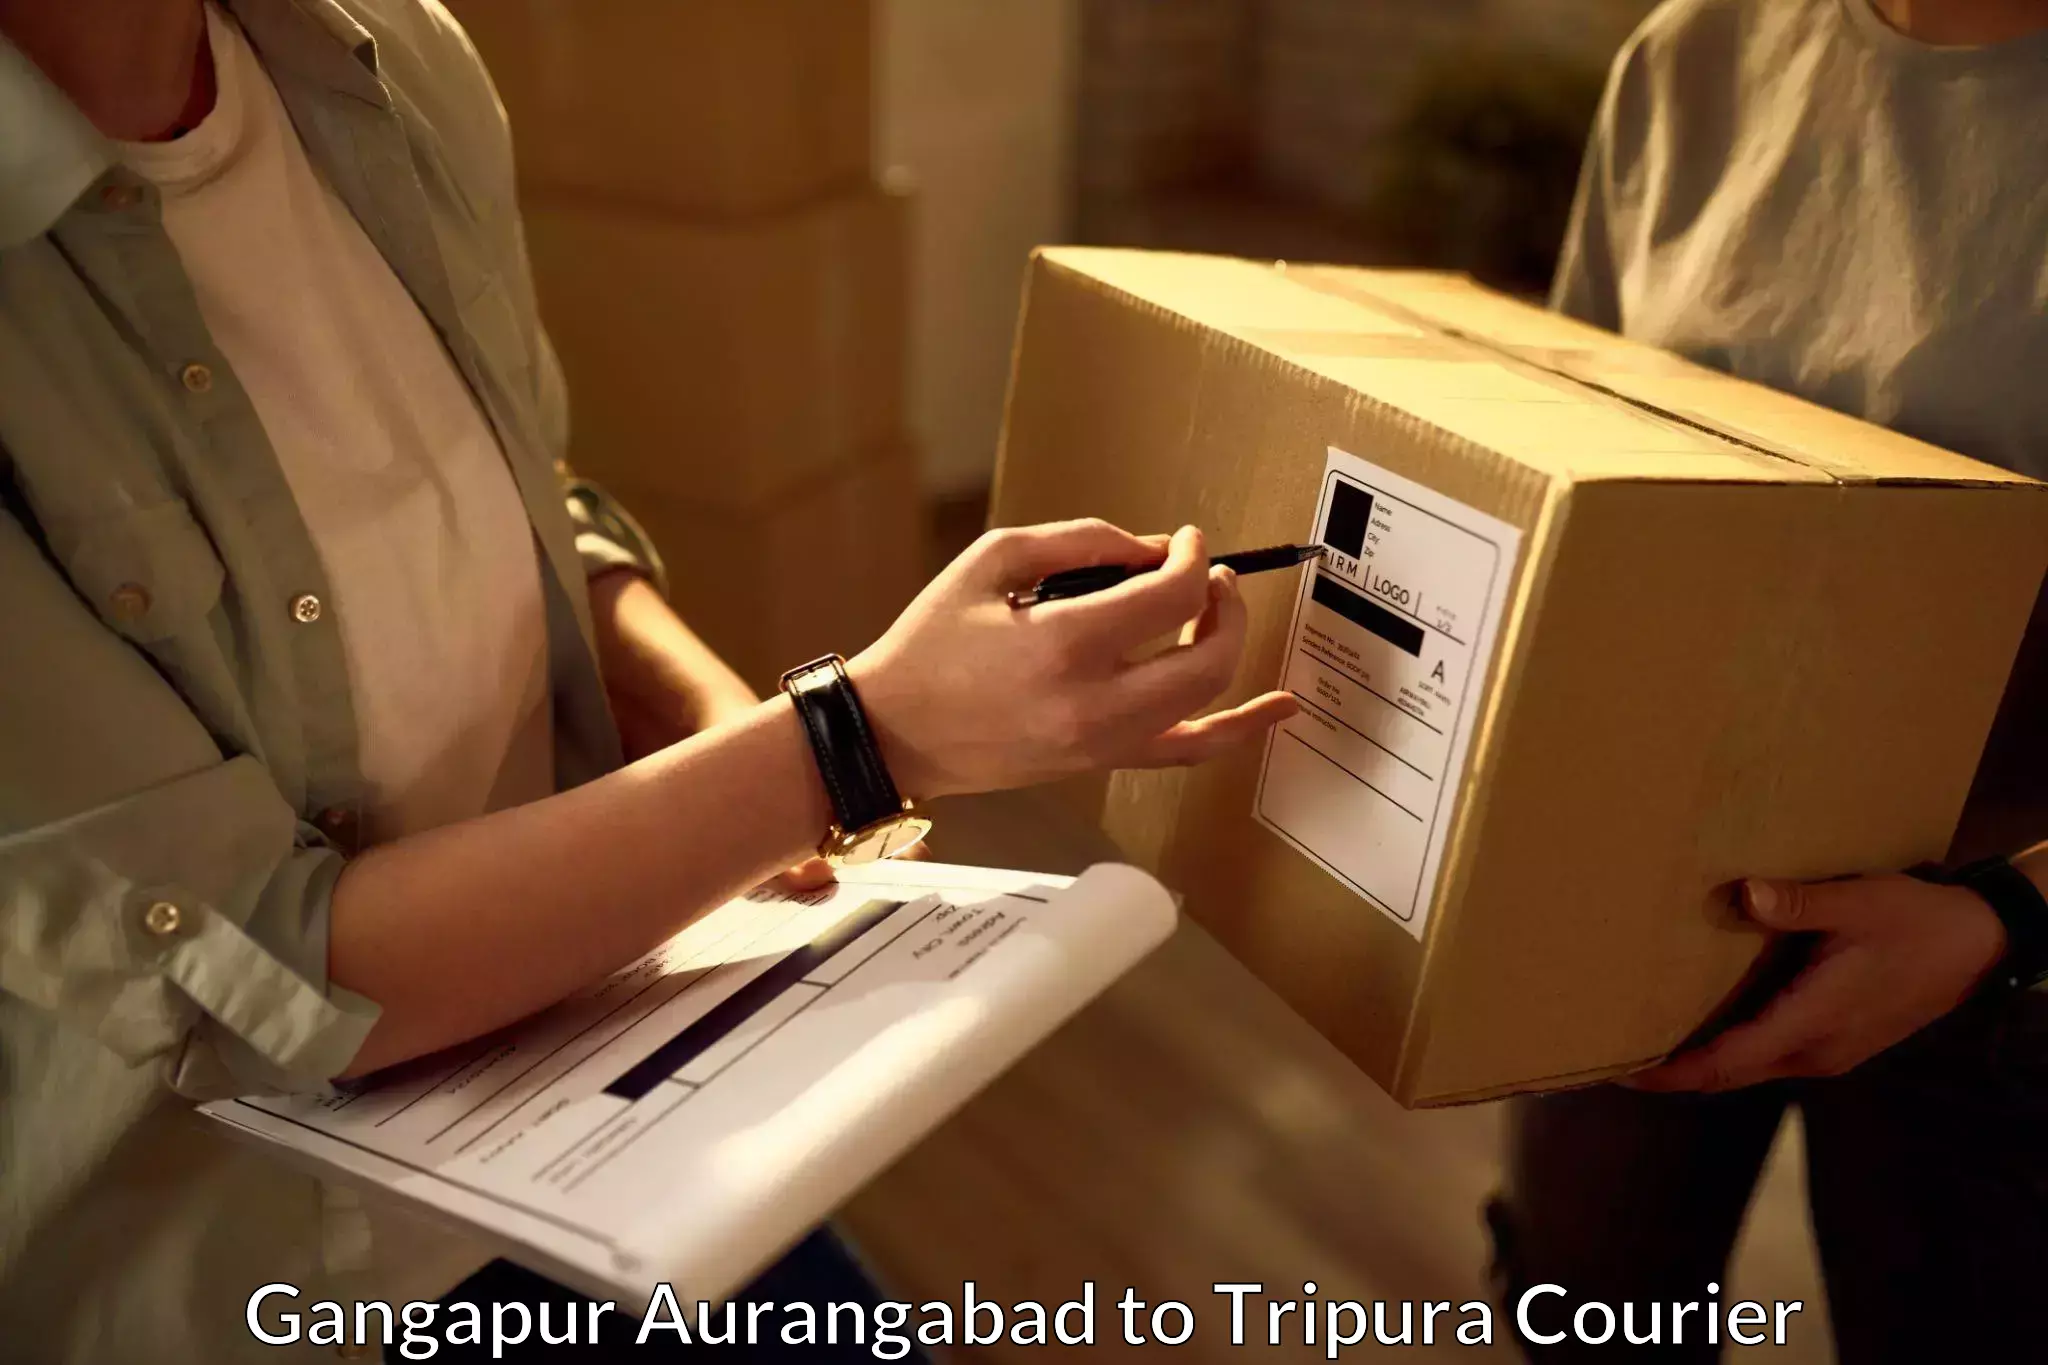 Same day shipping Gangapur Aurangabad to Udaipur Tripura